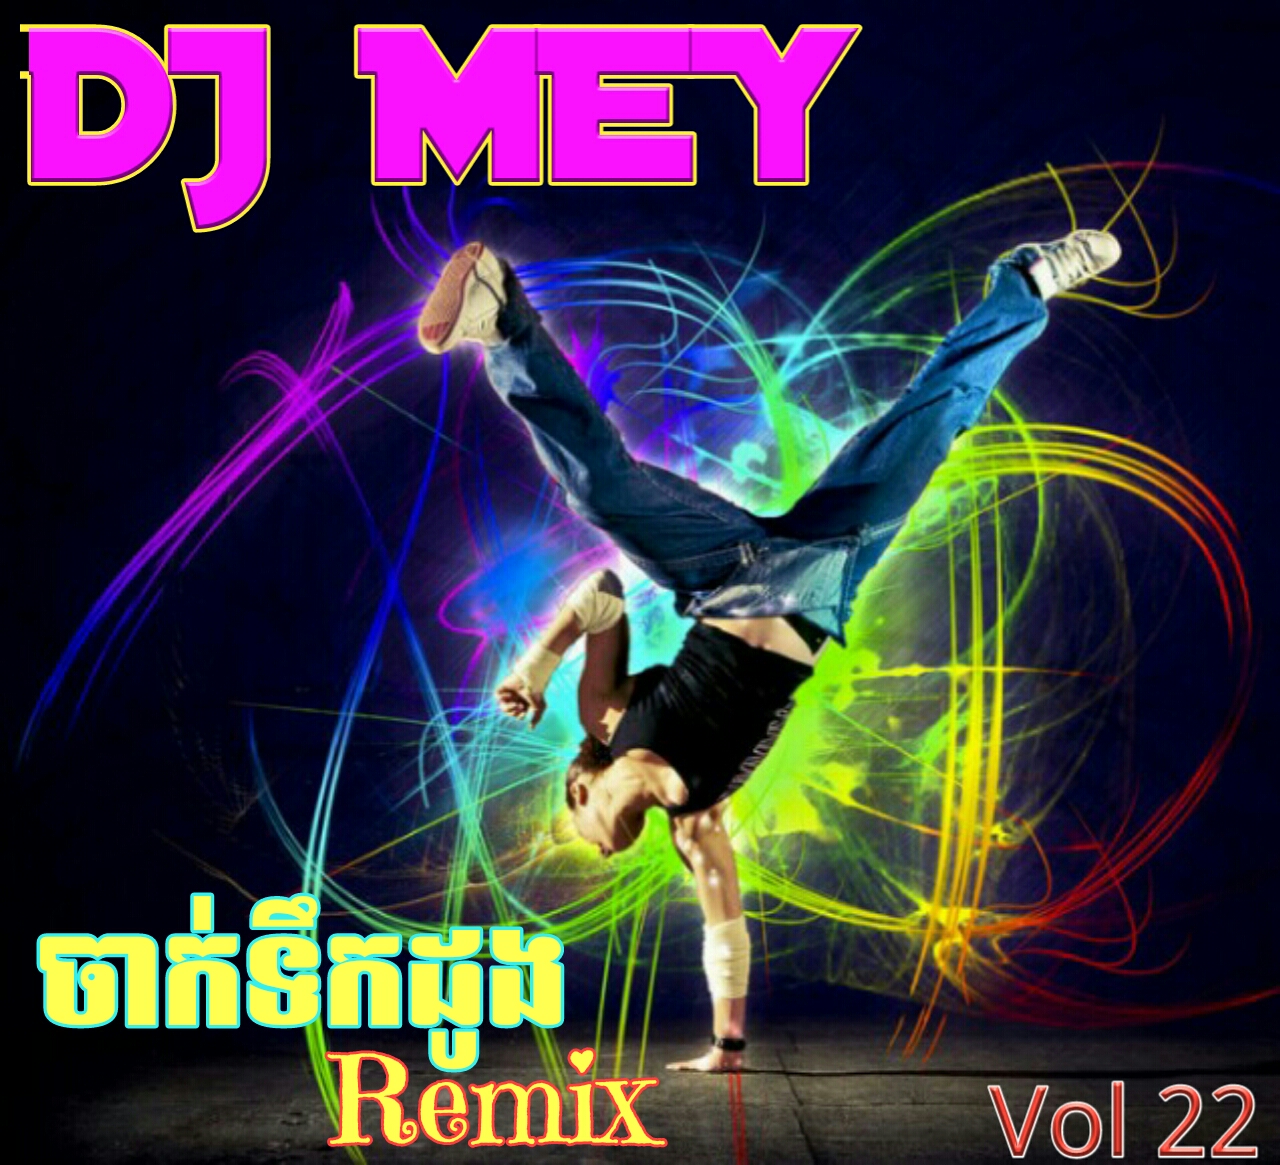 Dj Mey Remix Vol 22 - New Remix 2017 | Free MP3, MP4 Download